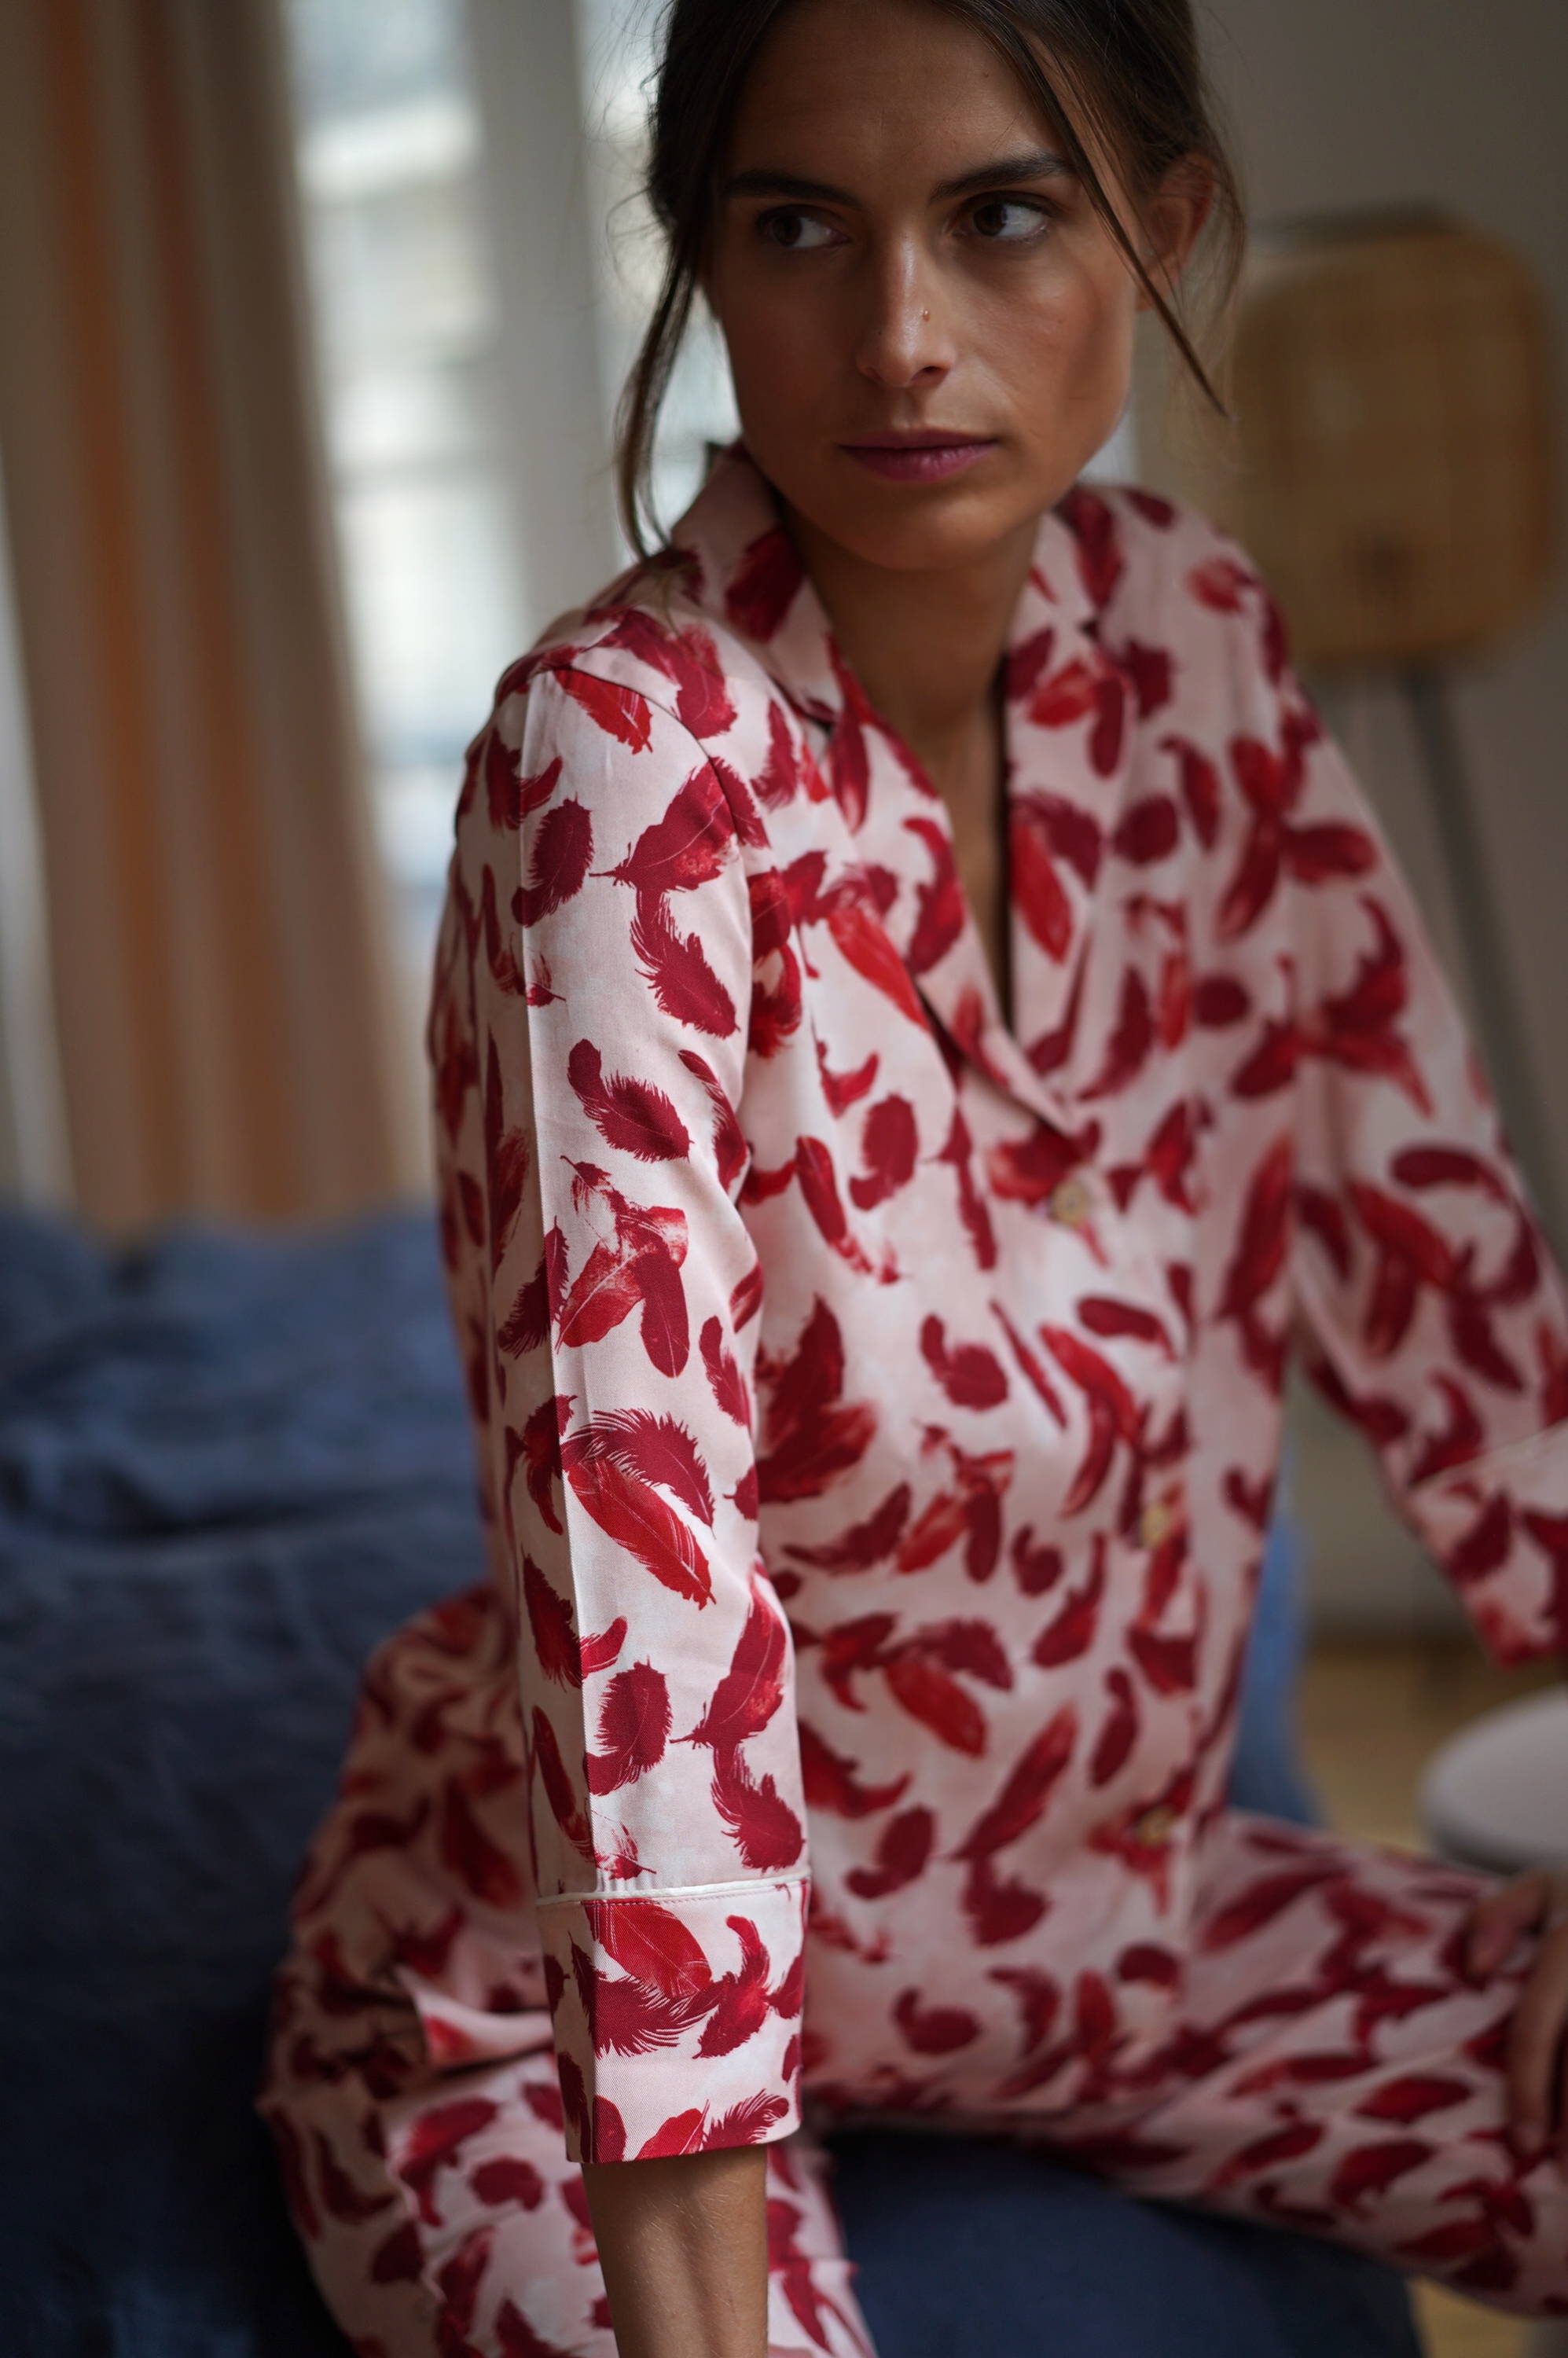 Nêge Paris - pyjamas 100% tencel lyocell oeko-tex certified